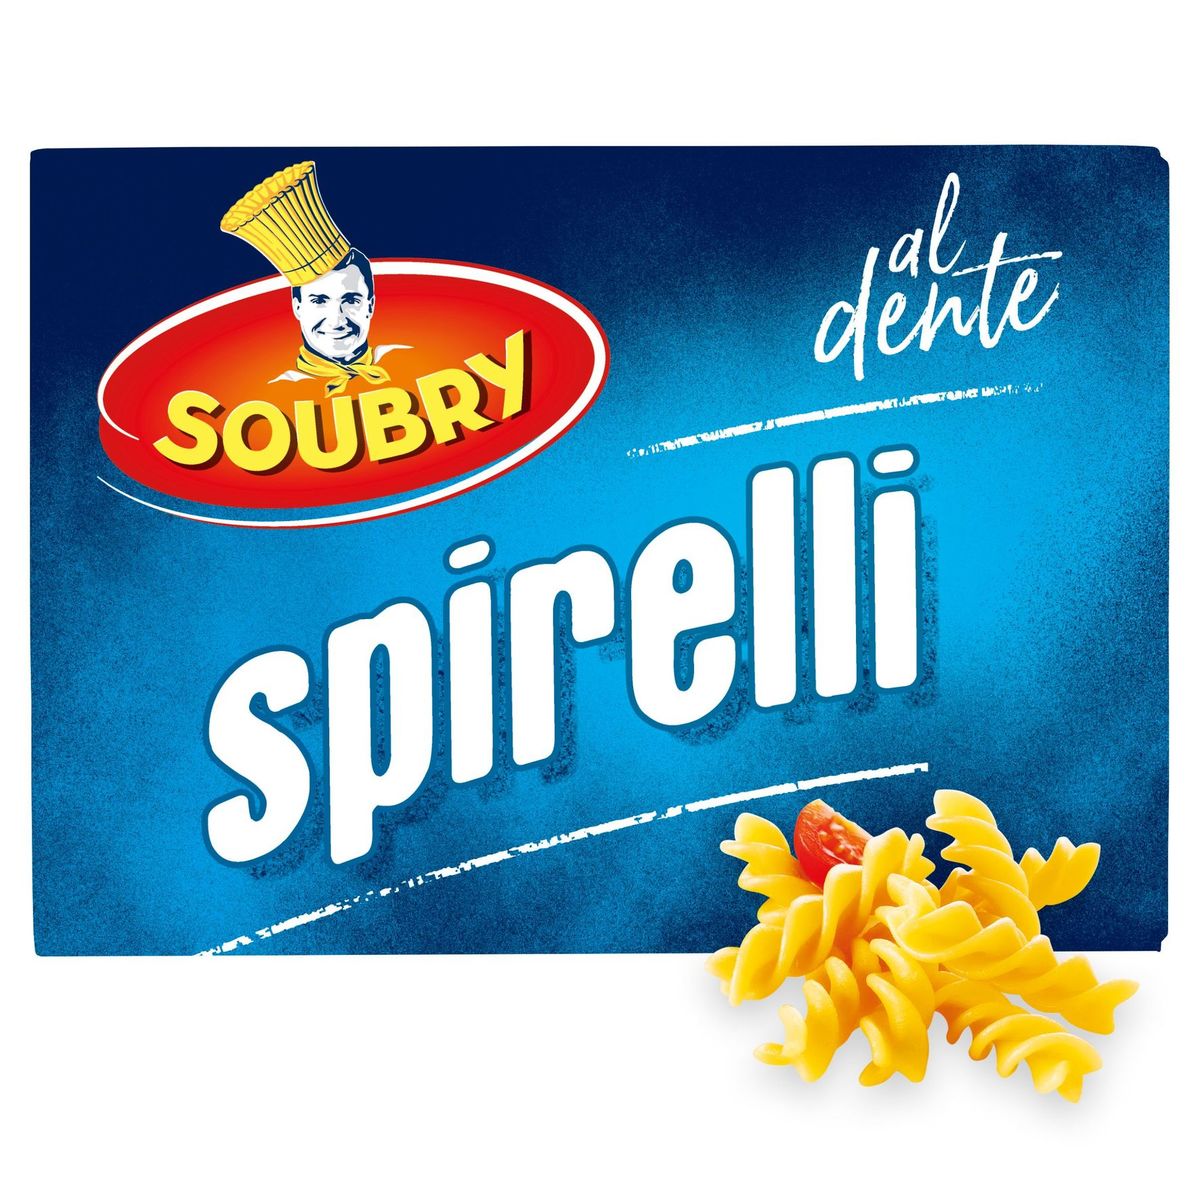 Soubry Pâtes Spirelli 375g